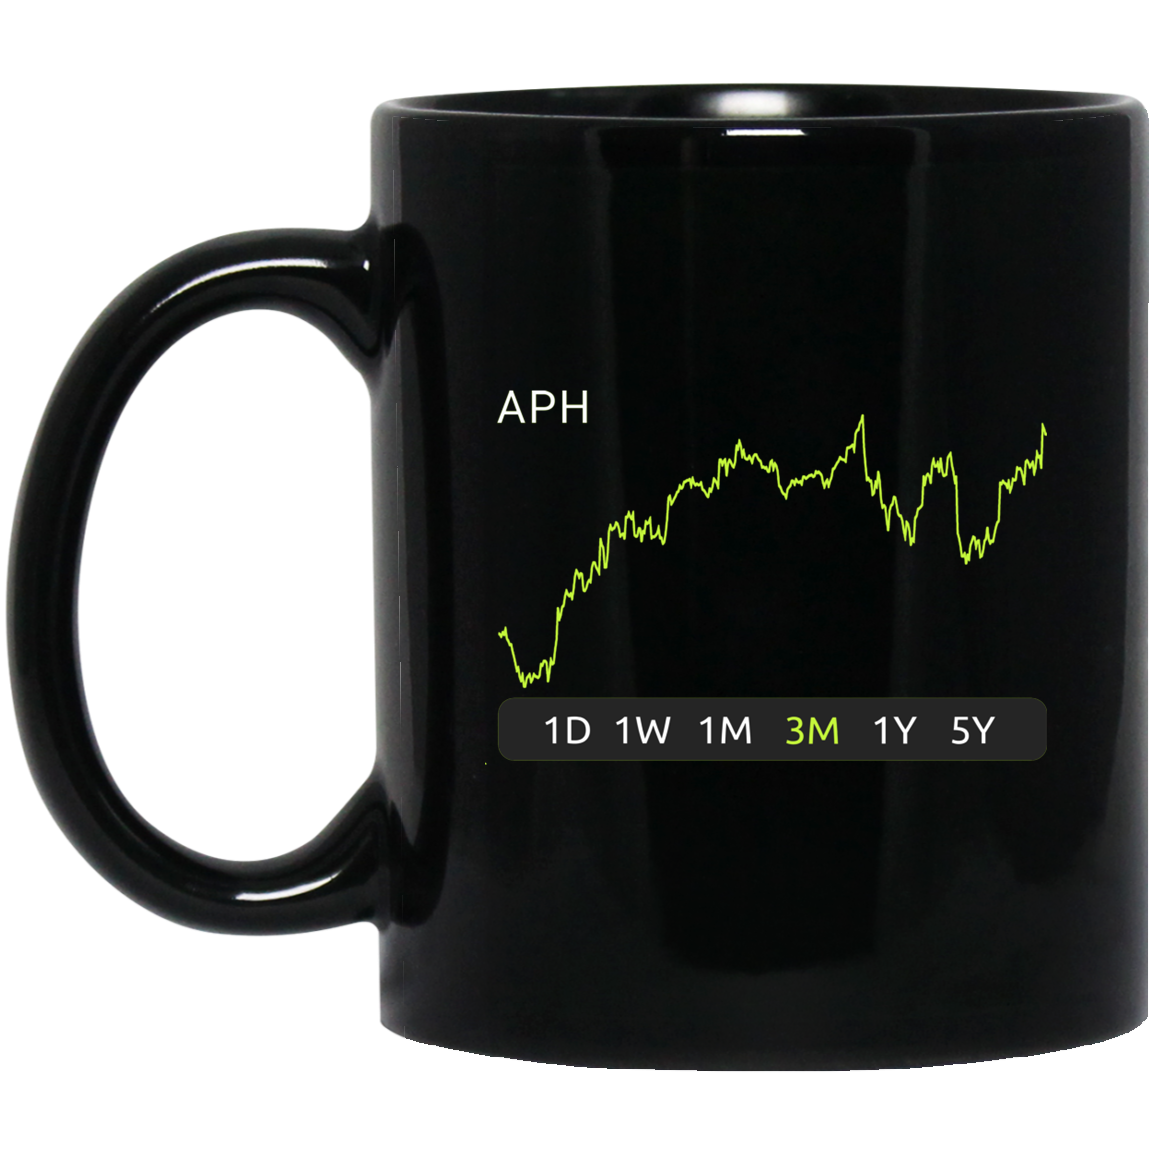 APH Stock 3m Mug